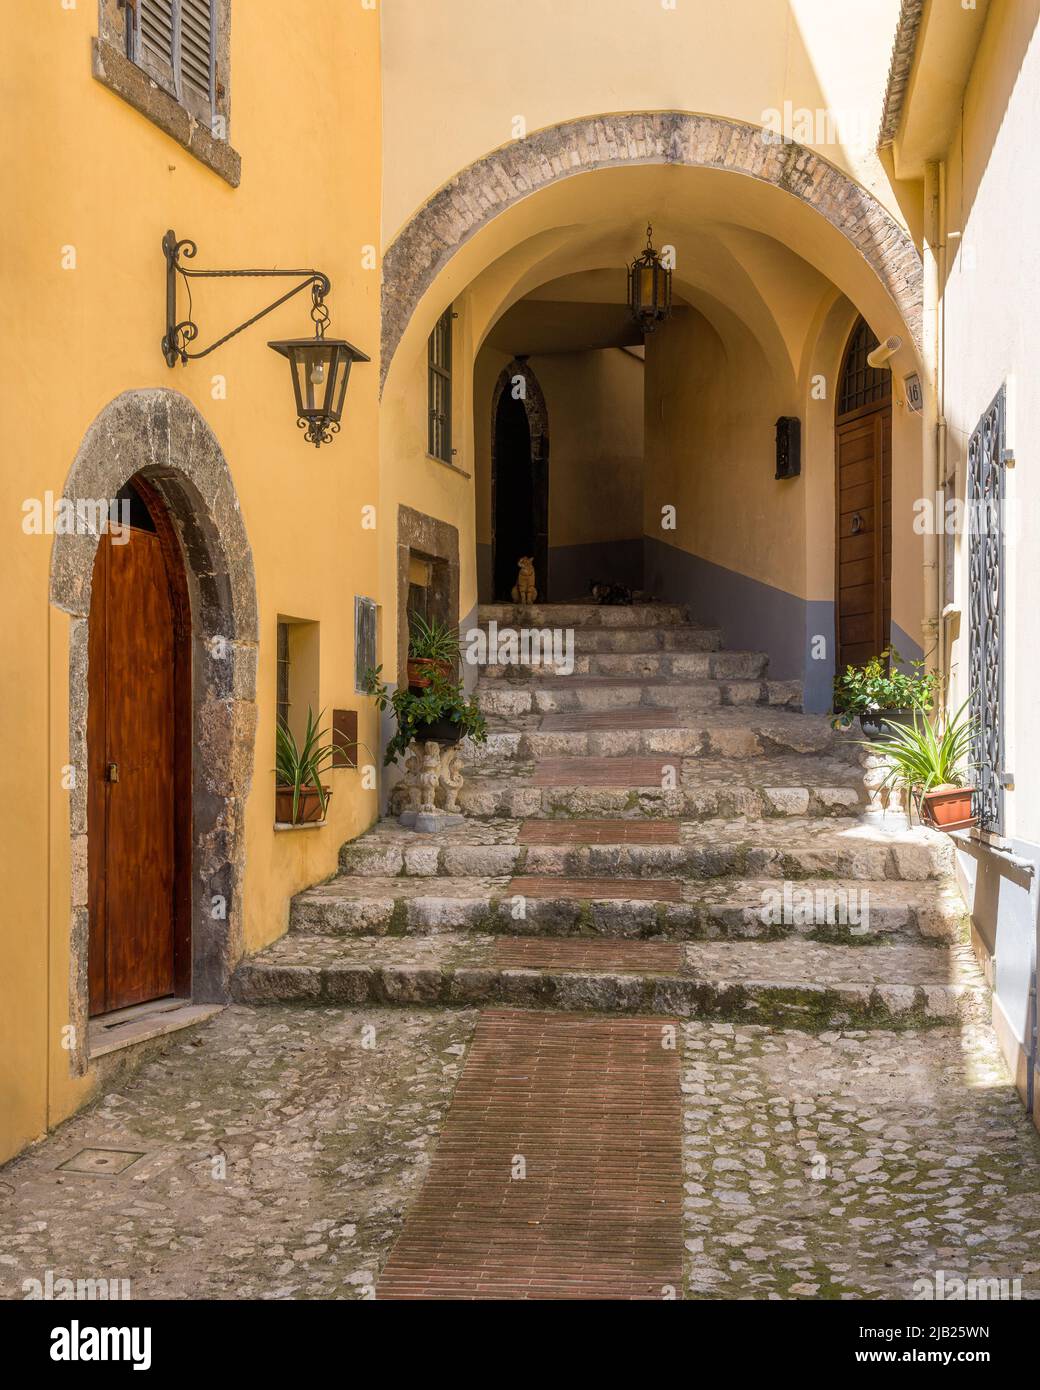 El hermoso pueblo de Veroli, cerca de Frosinone, Lazio, centro de Italia. Foto de stock